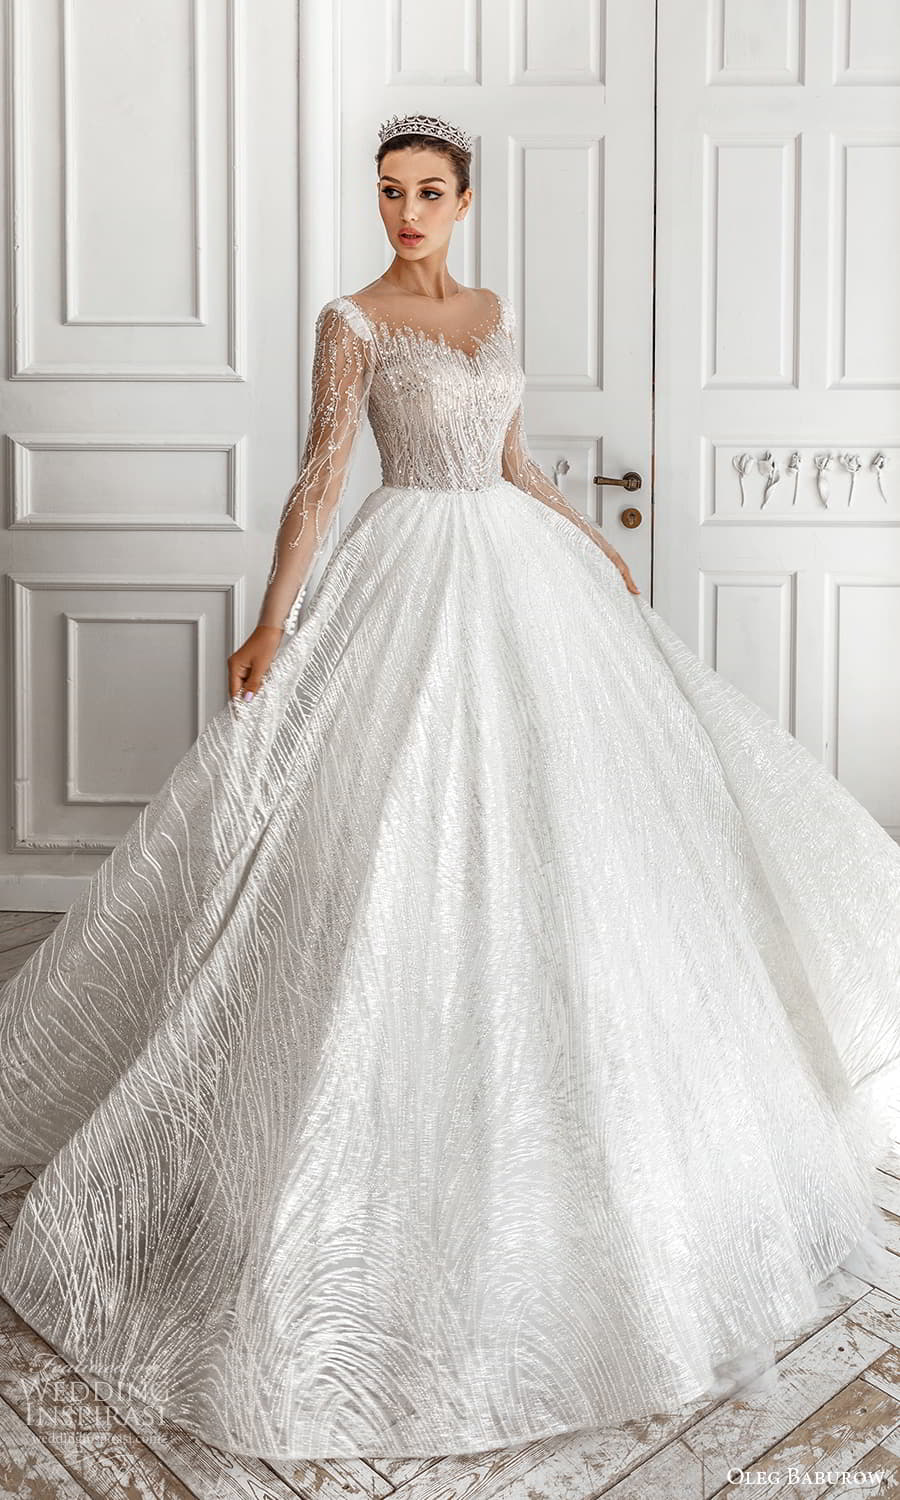 Oleg Baburow 2022 Wedding Dresses — “Sky and Stars” Bridal Collection ...